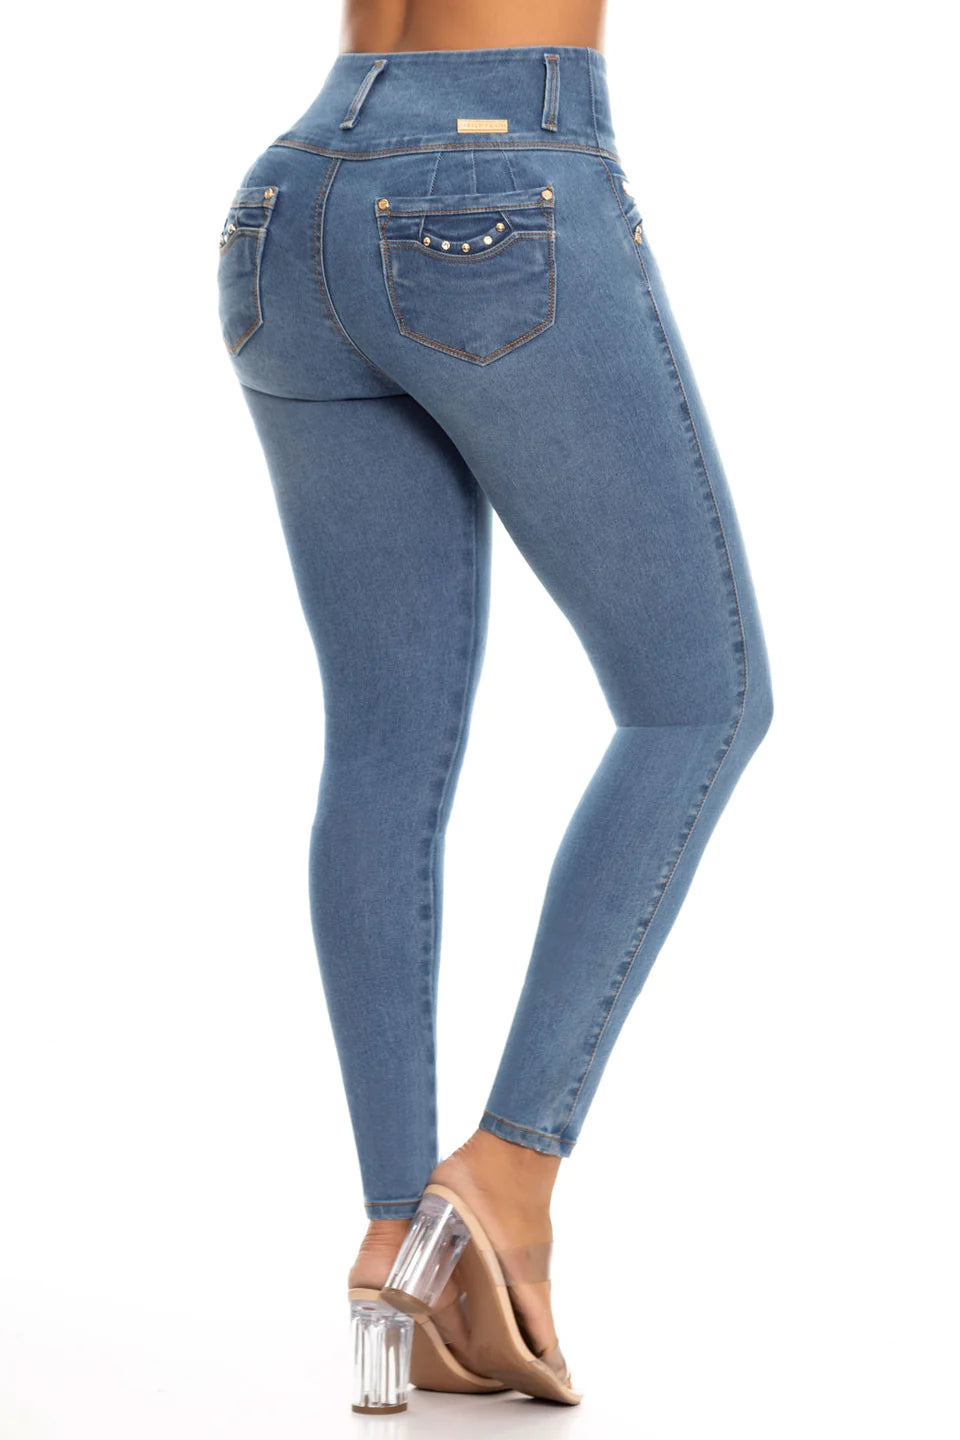 High-Waisted Basic Skinny Push Up Jean